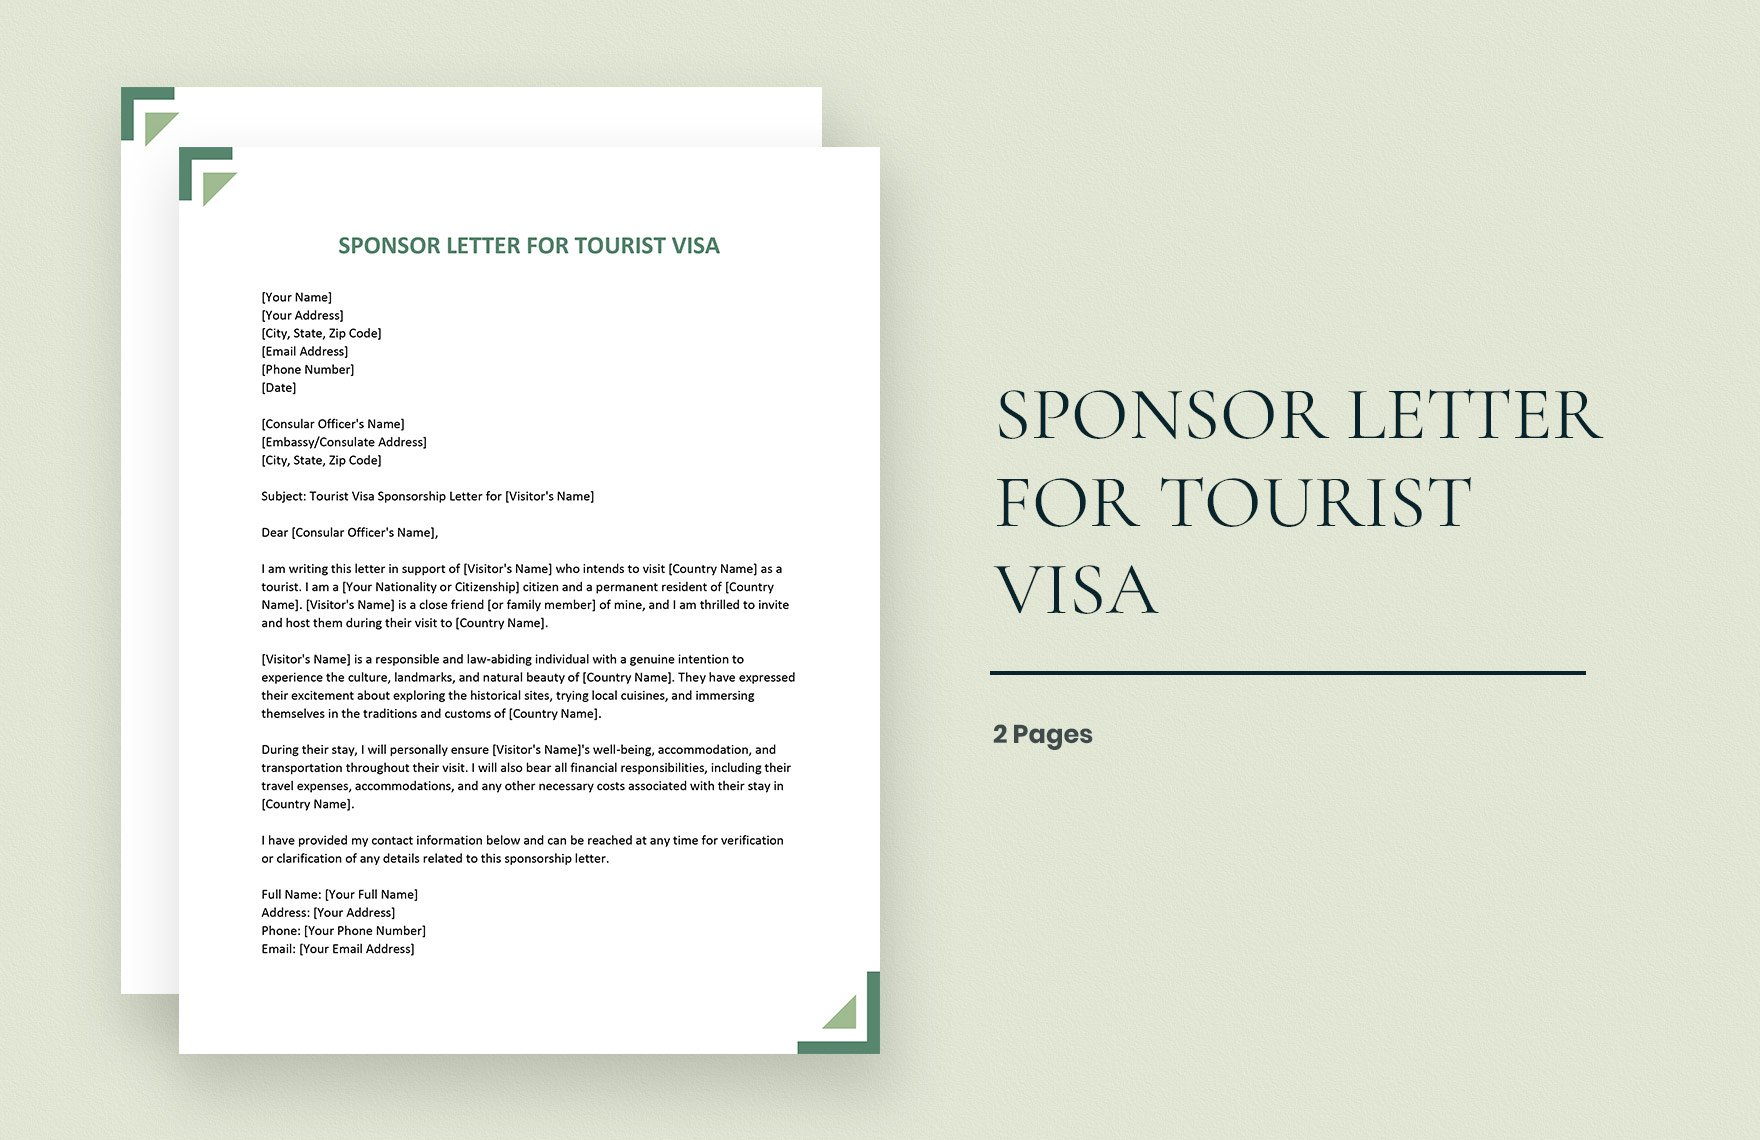 Sponsor Letter for Tourist Visa